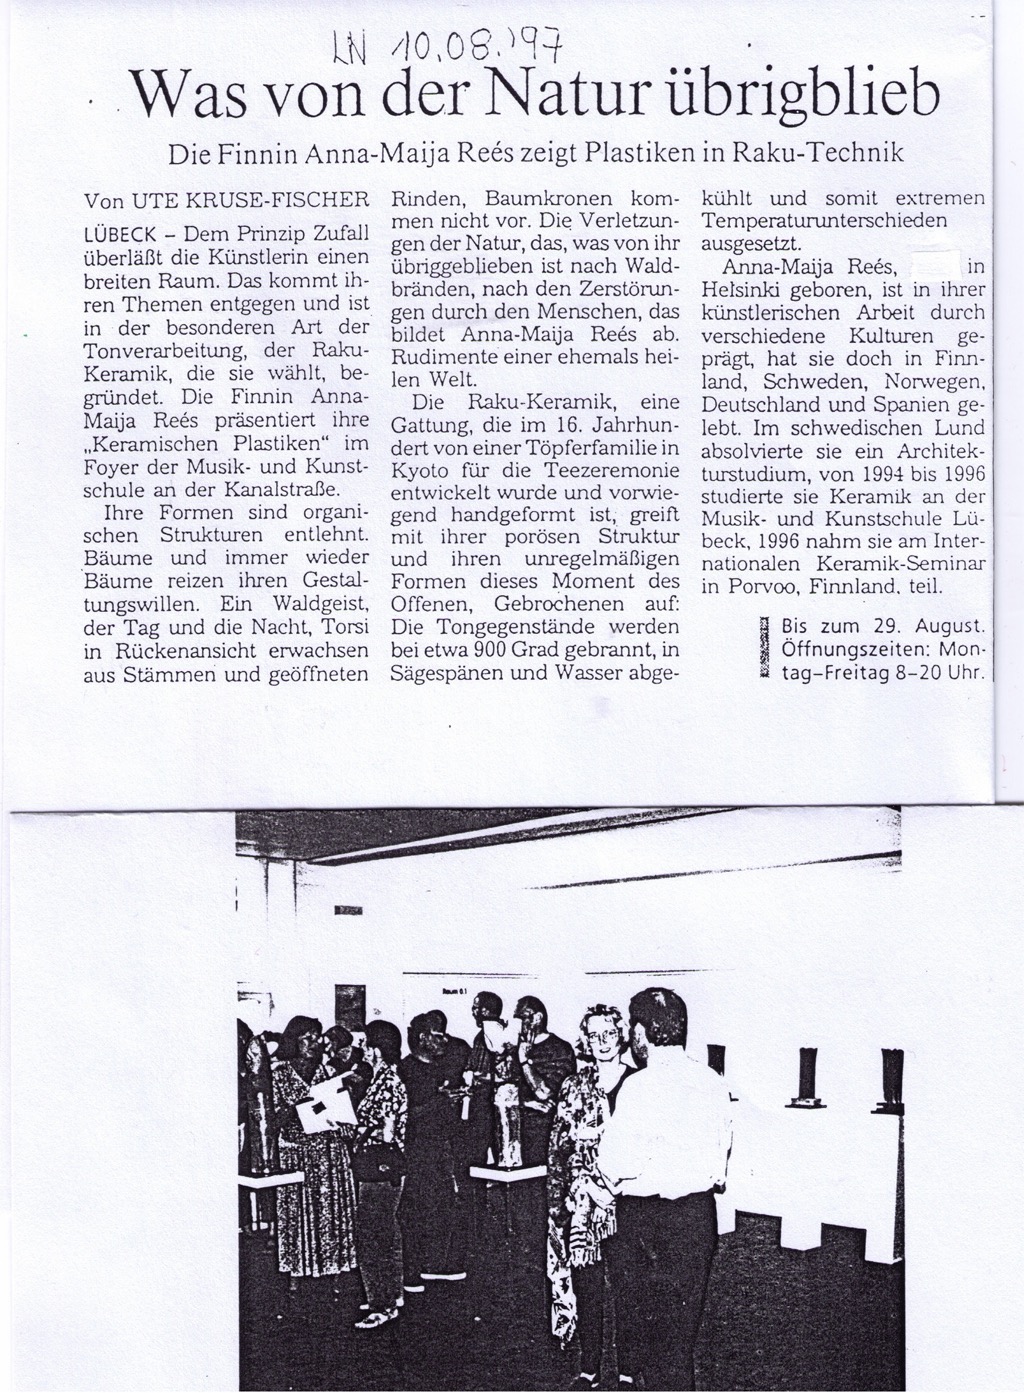 Lübecker Nachrichten 1997 | Dr. Ute Kruse-Fischer